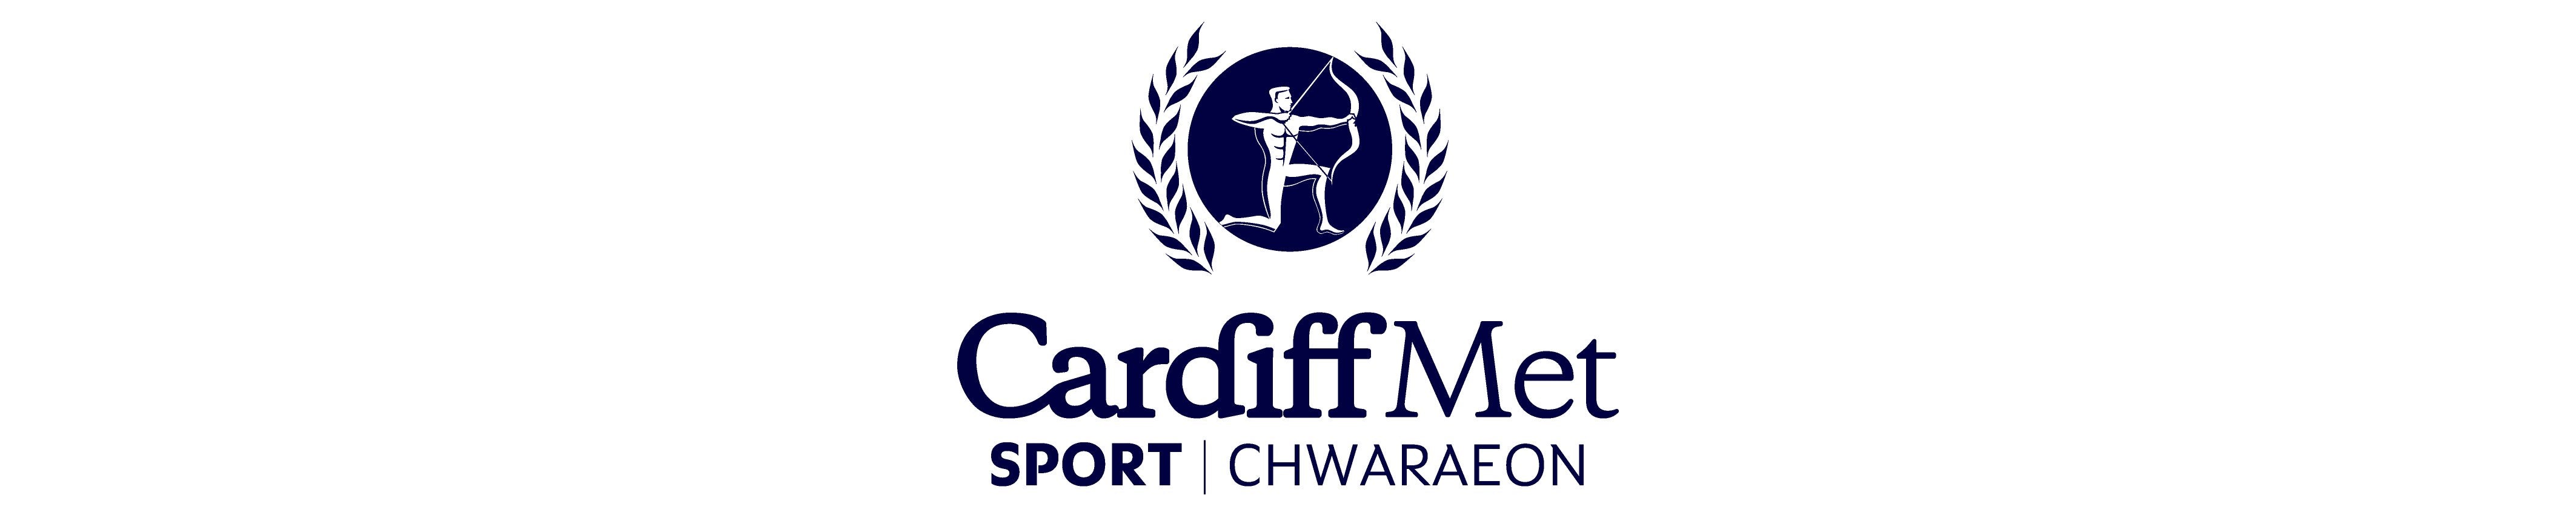 Cardiff Archers Athletic Club